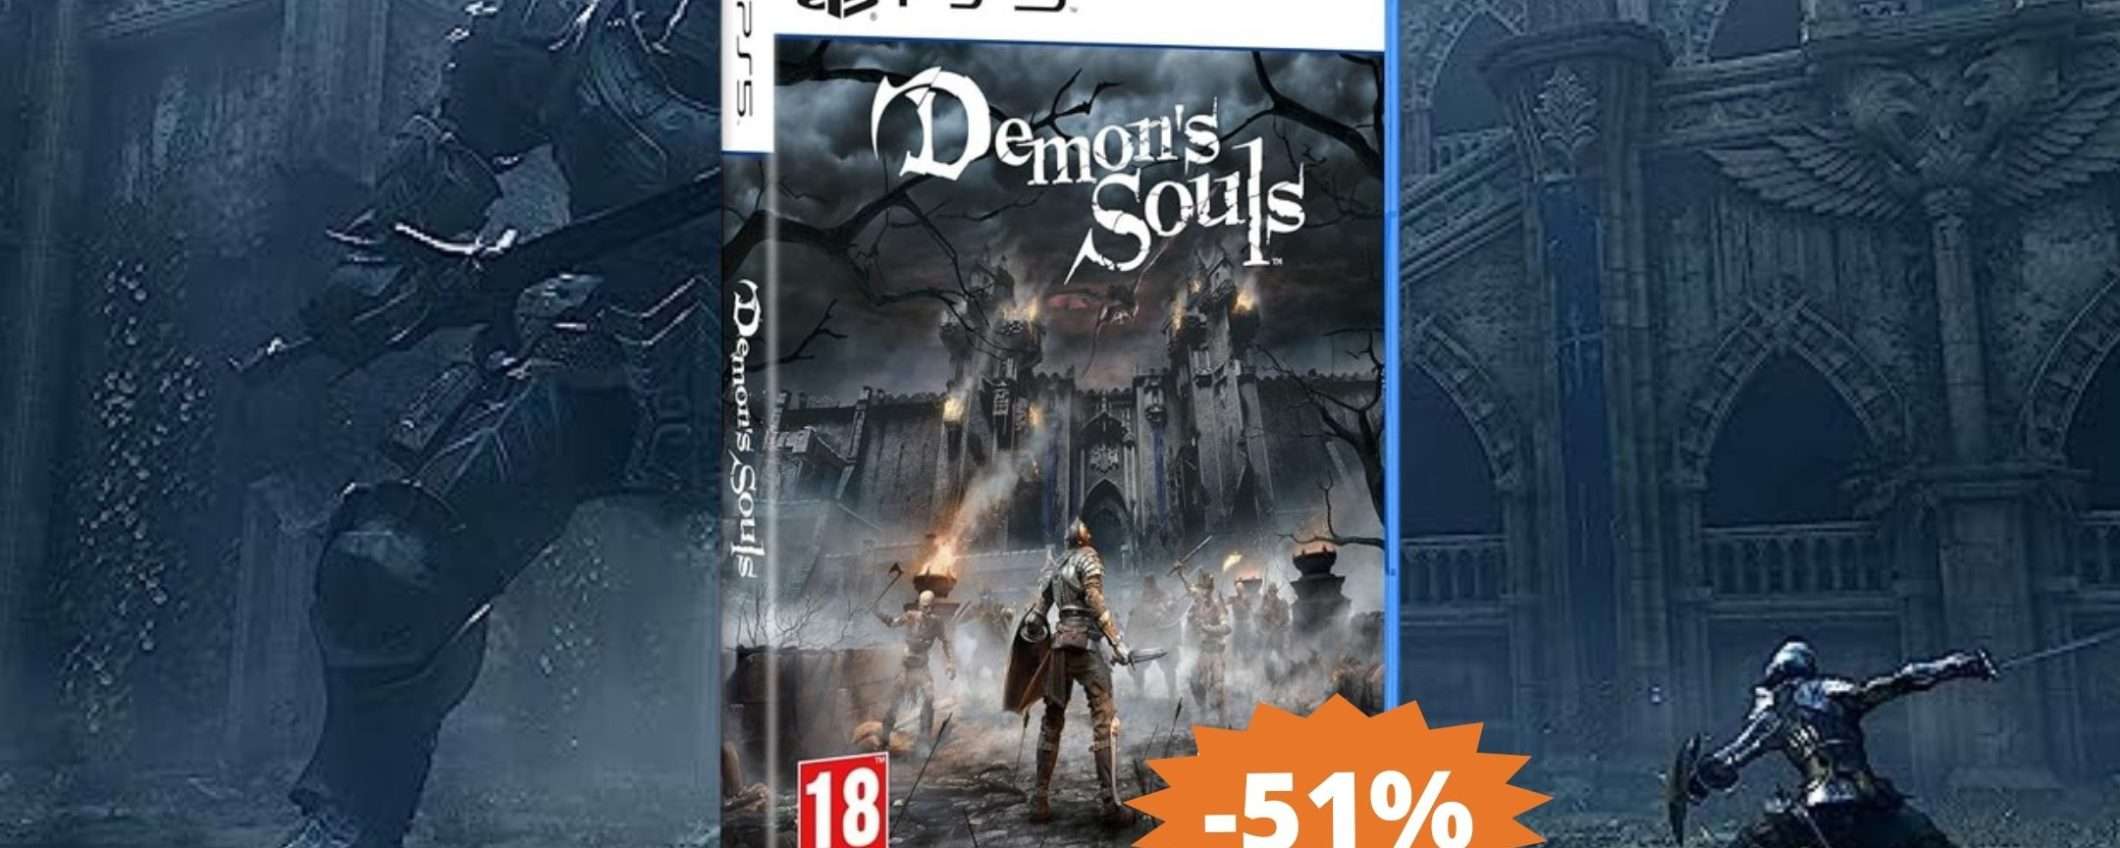 Demon's Souls per PS5: sconto FOLLE del 51% su Amazon